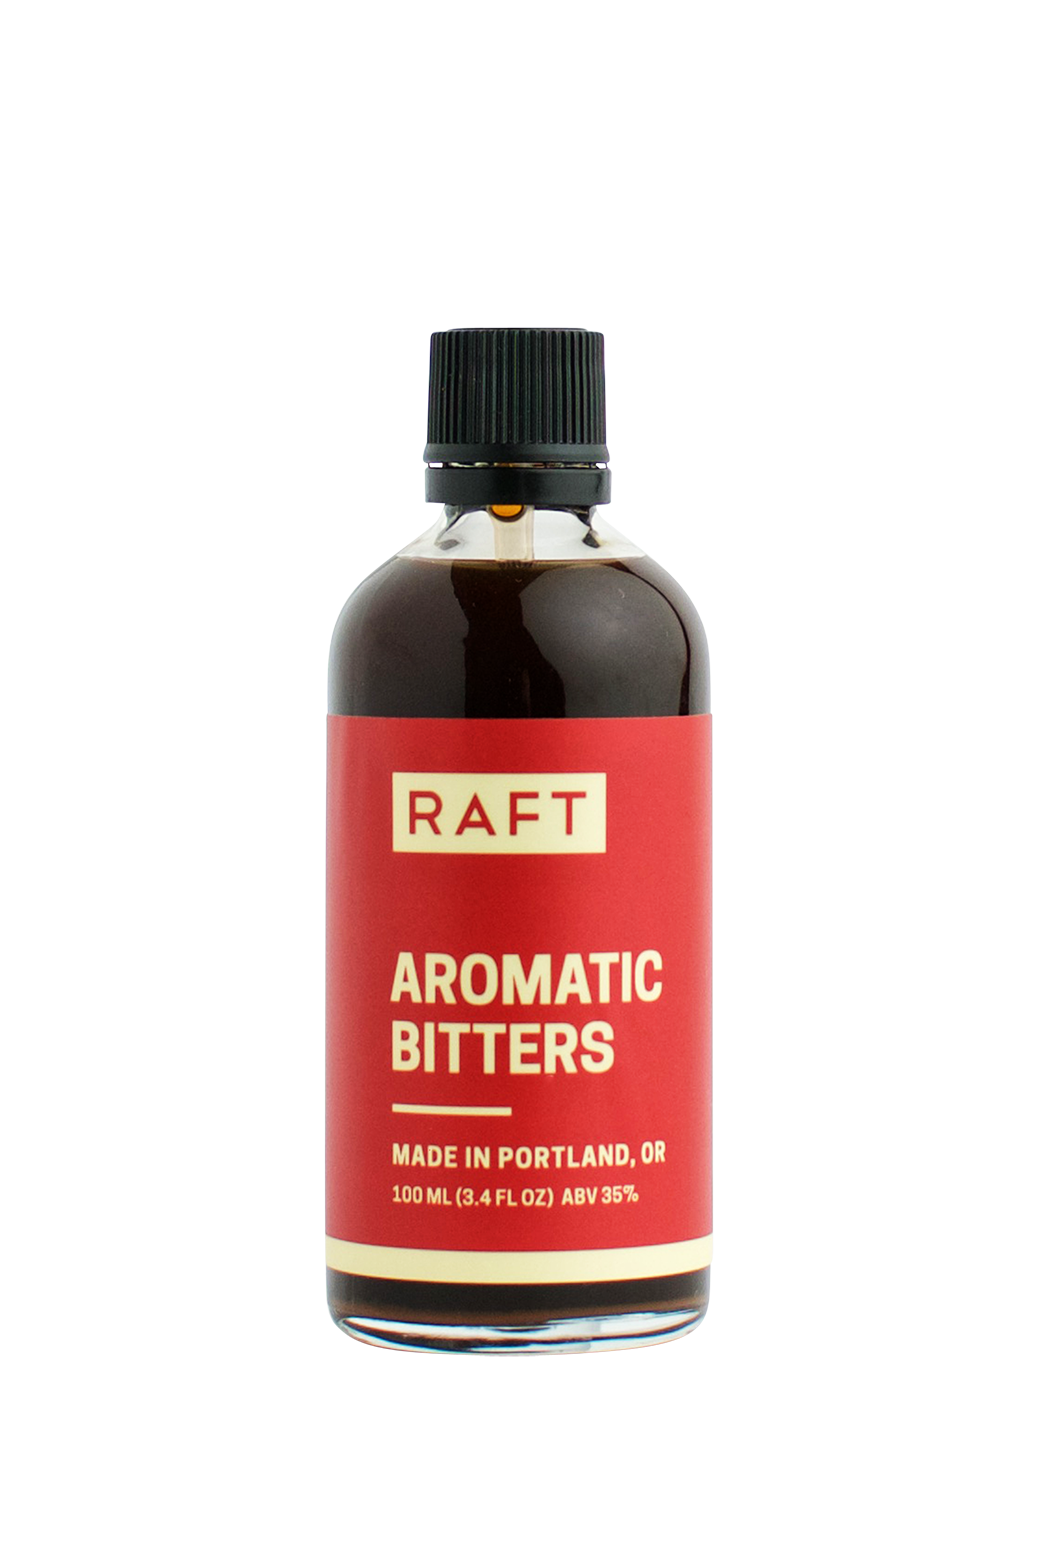 Raft Aromatic Bitters